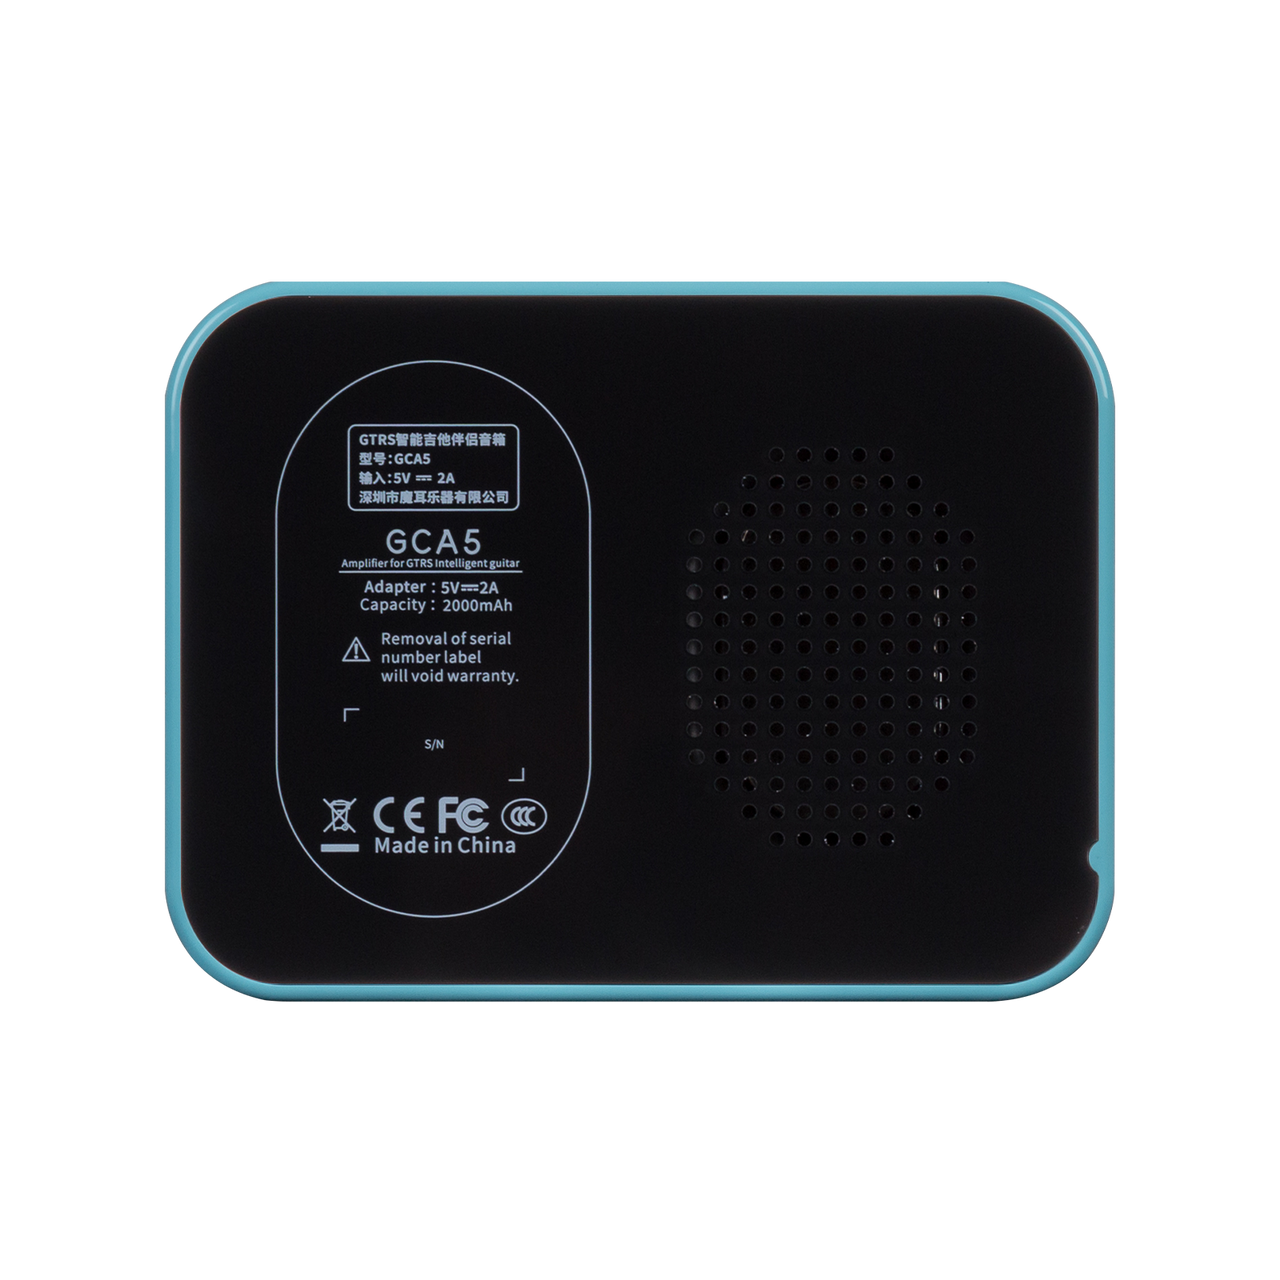 Mooer 5W GTRS PTNR Rechargeable Mini Bluetooth Amplifier (Blue)